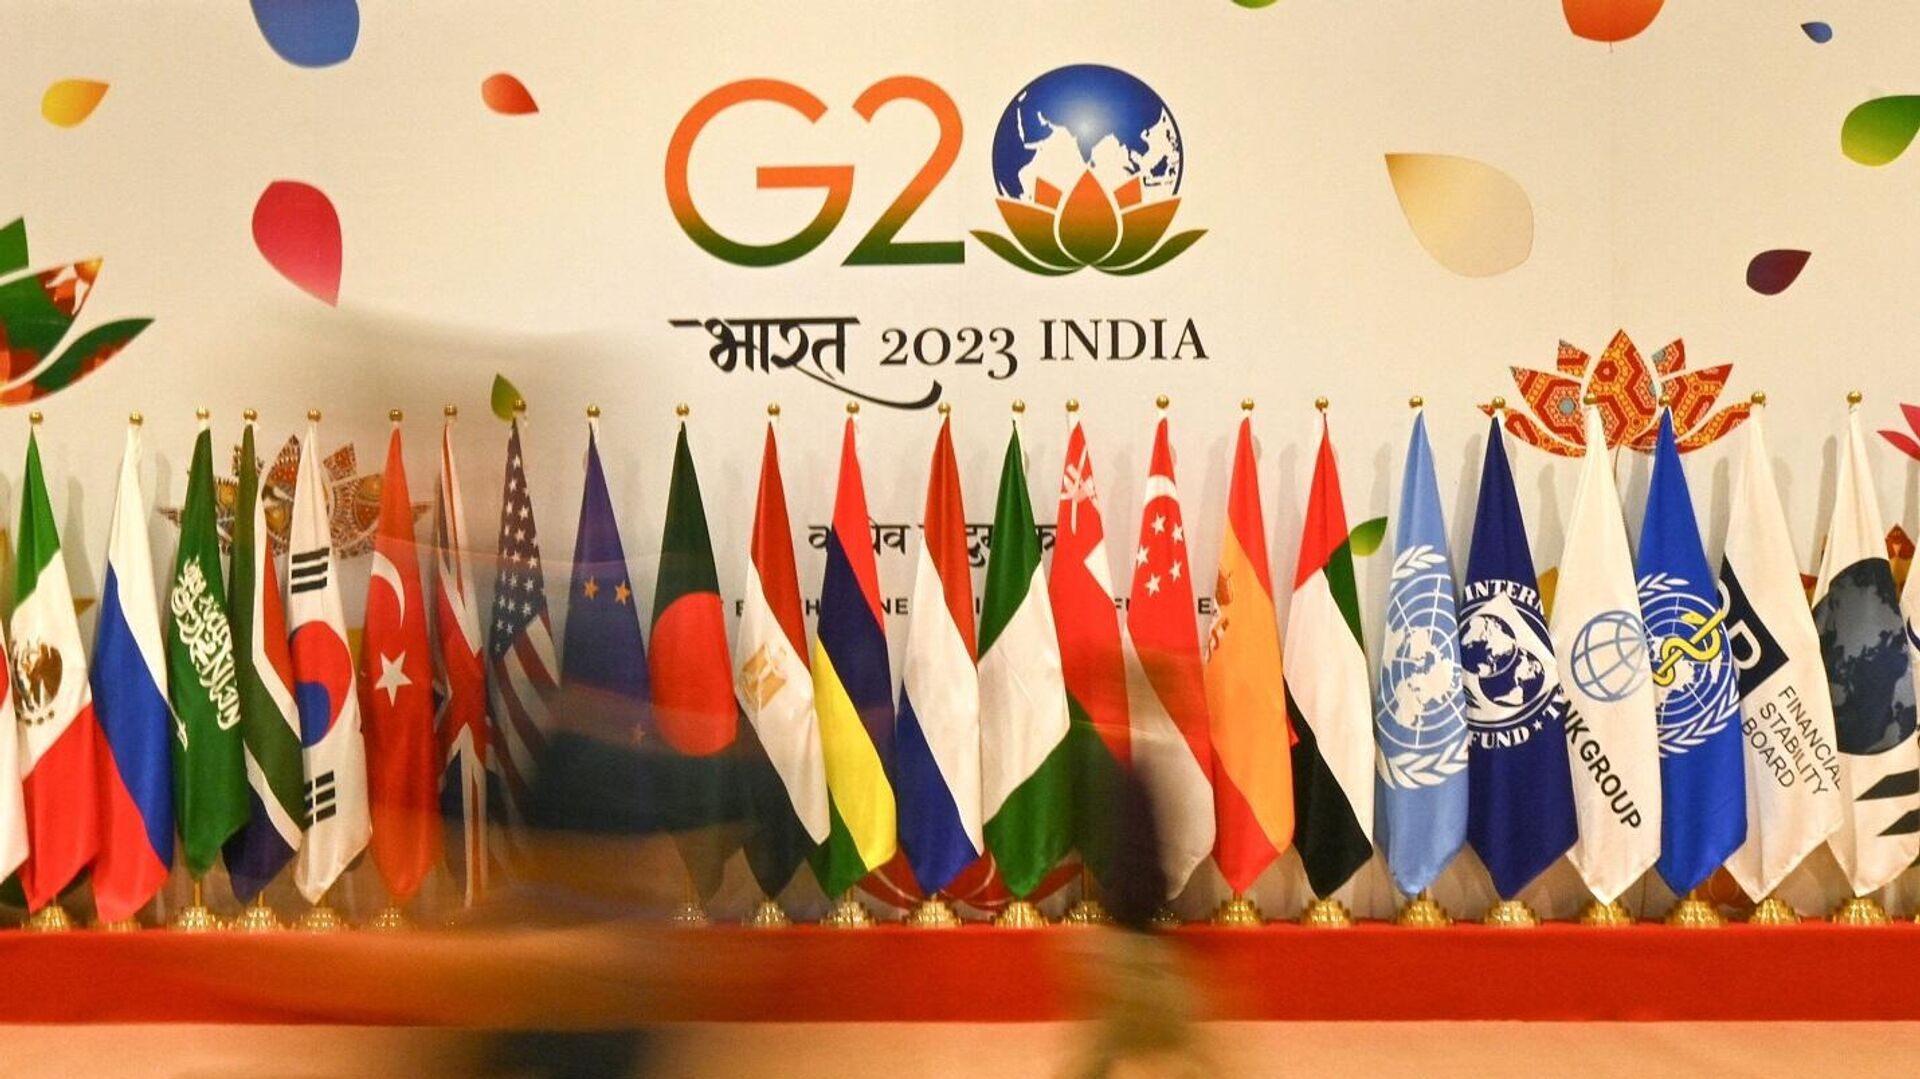 الهند على مشارف قمة العشرين...أبرز المعلومات حول المجموعة